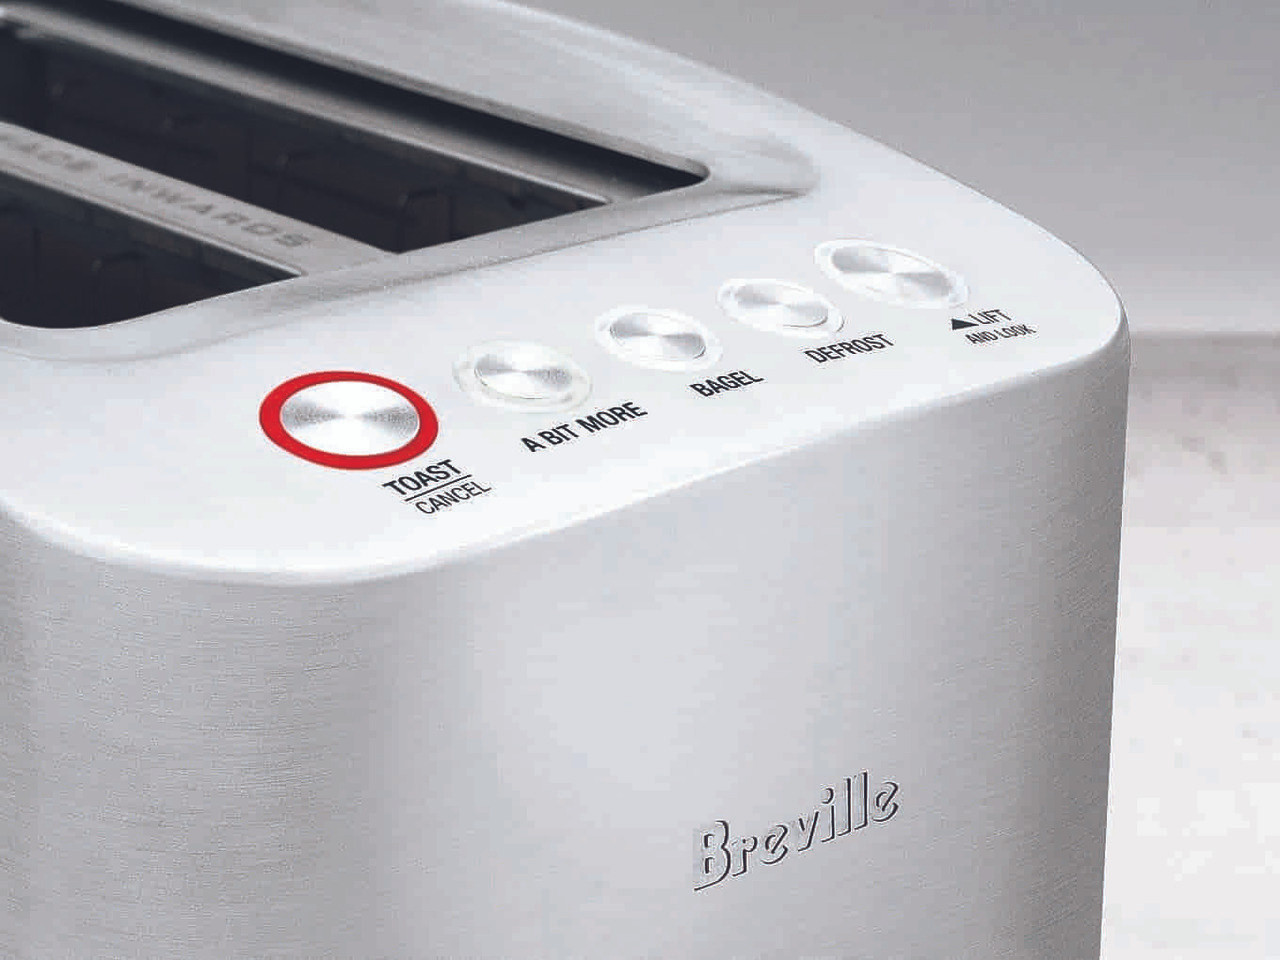 Breville 2-Slice Smart Toaster